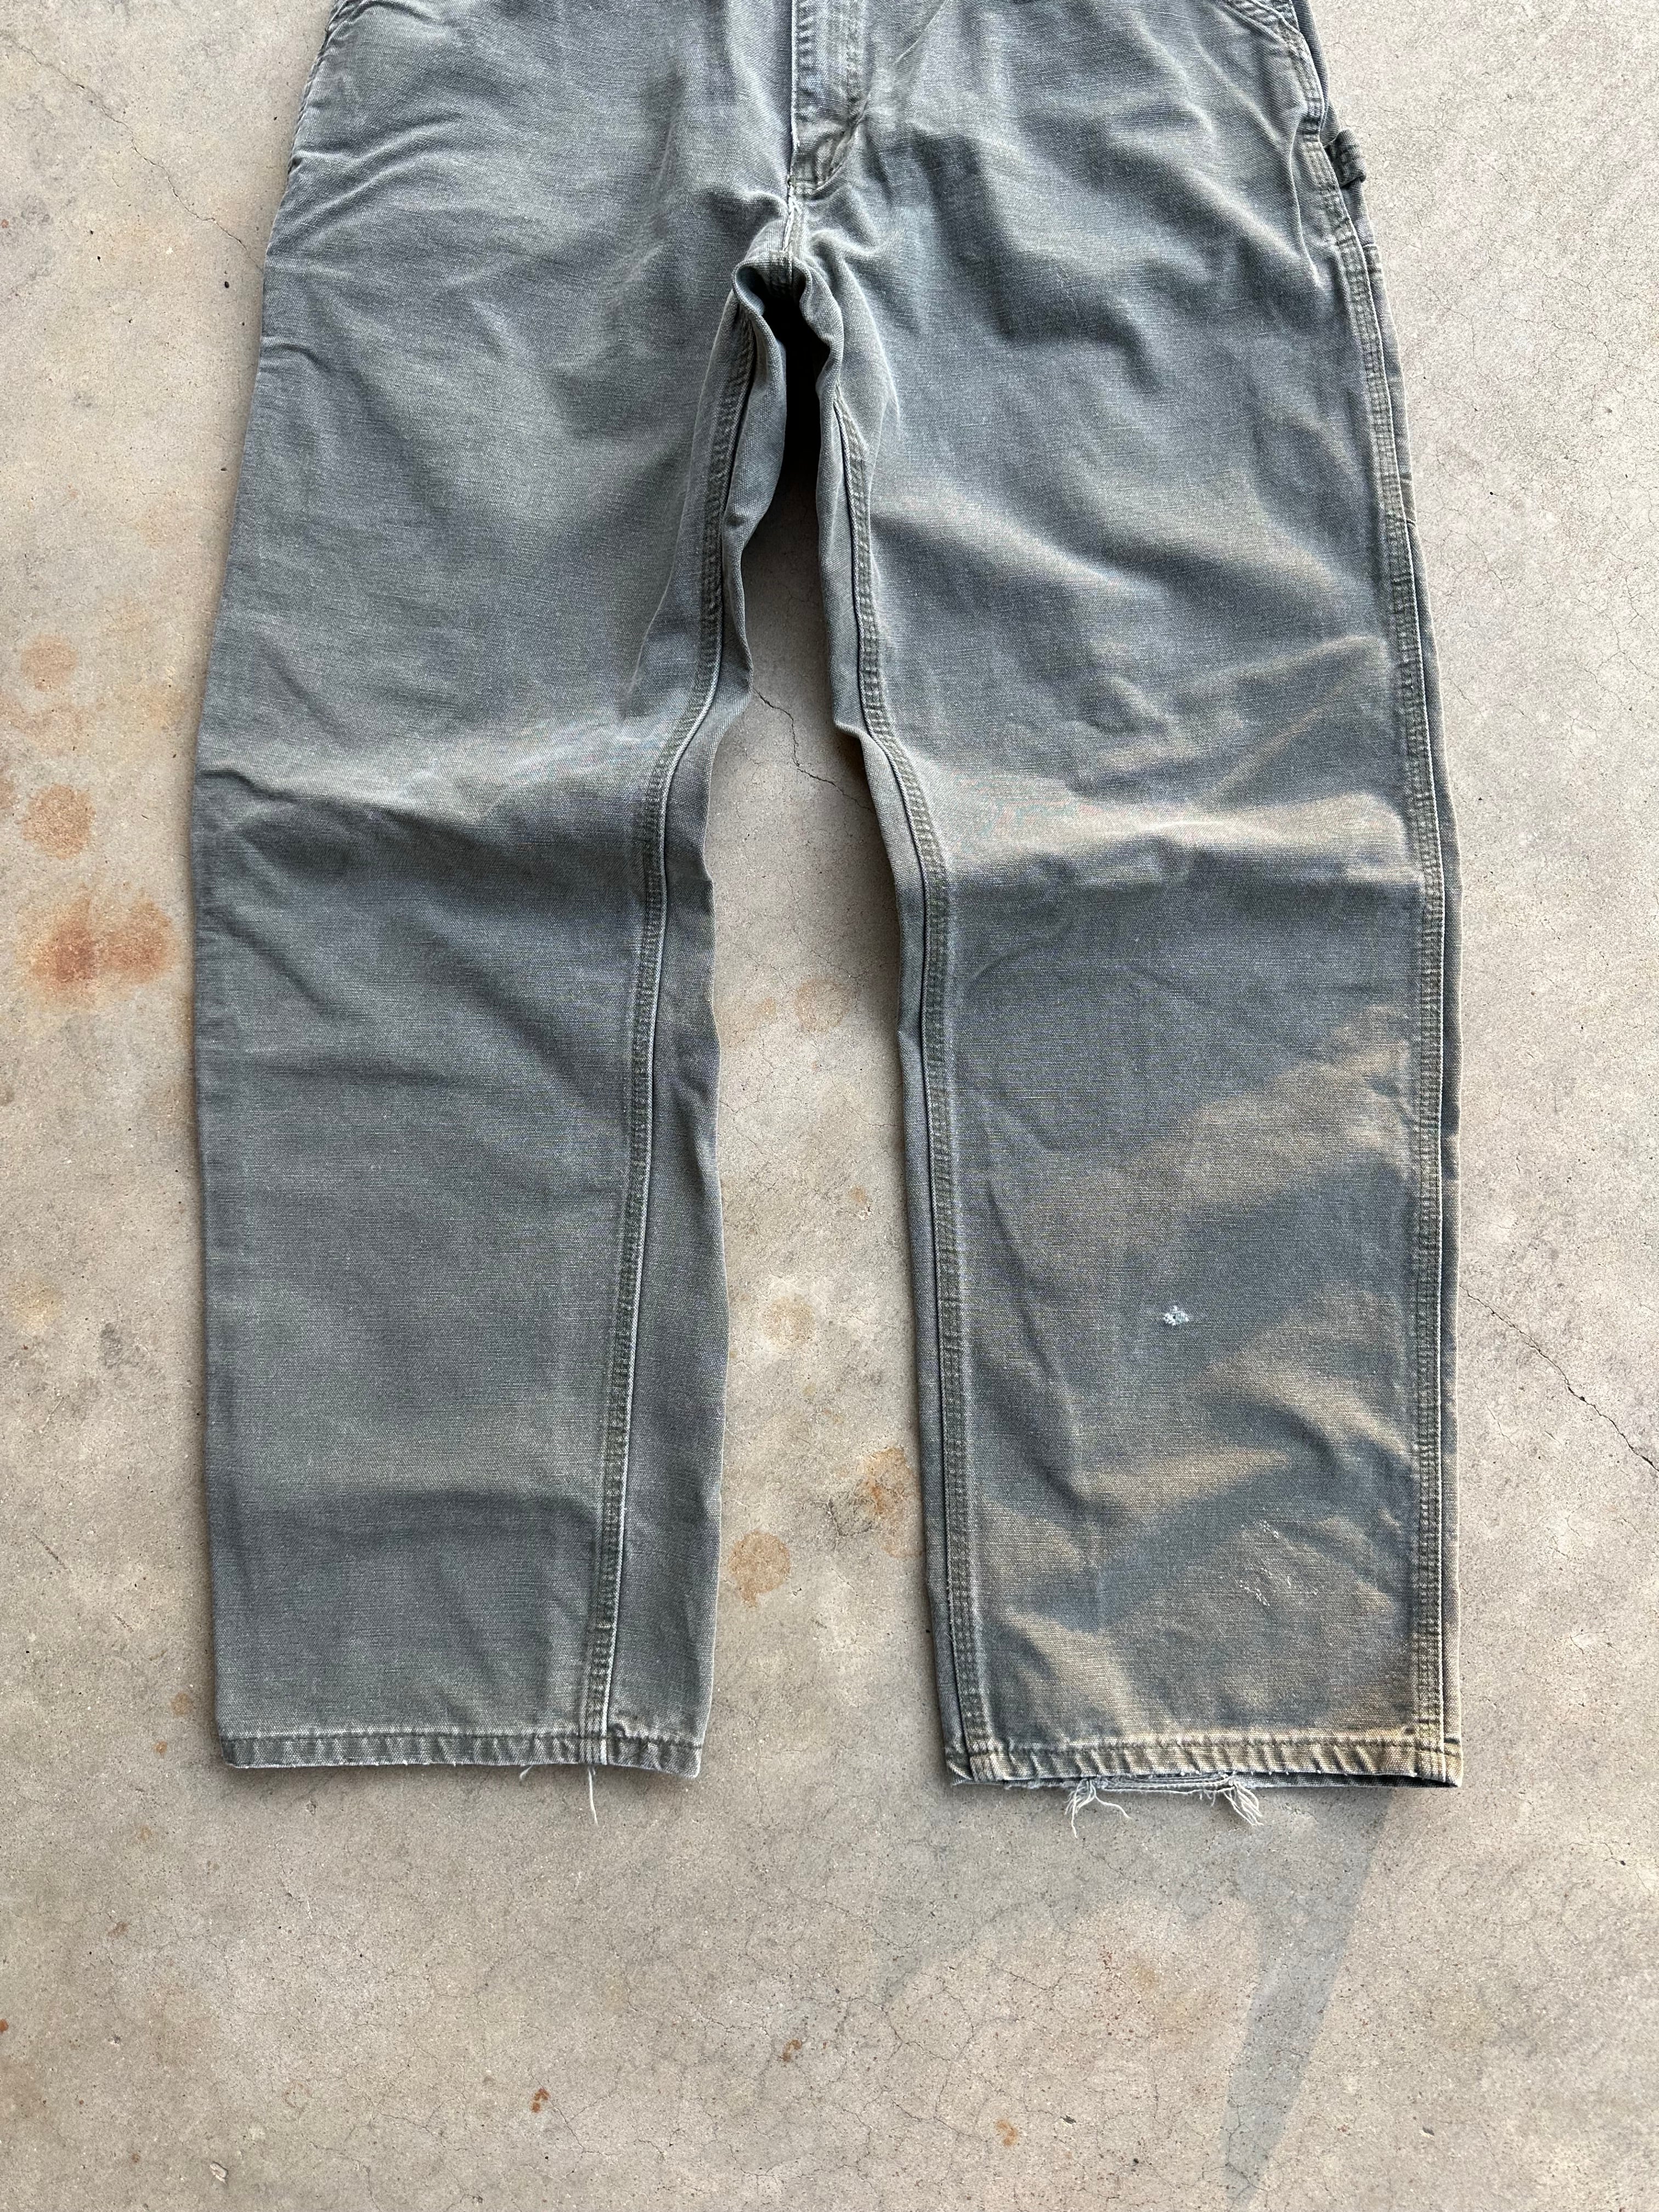 Vintage Carhartt Olive Carpenter Pants (34"x31")